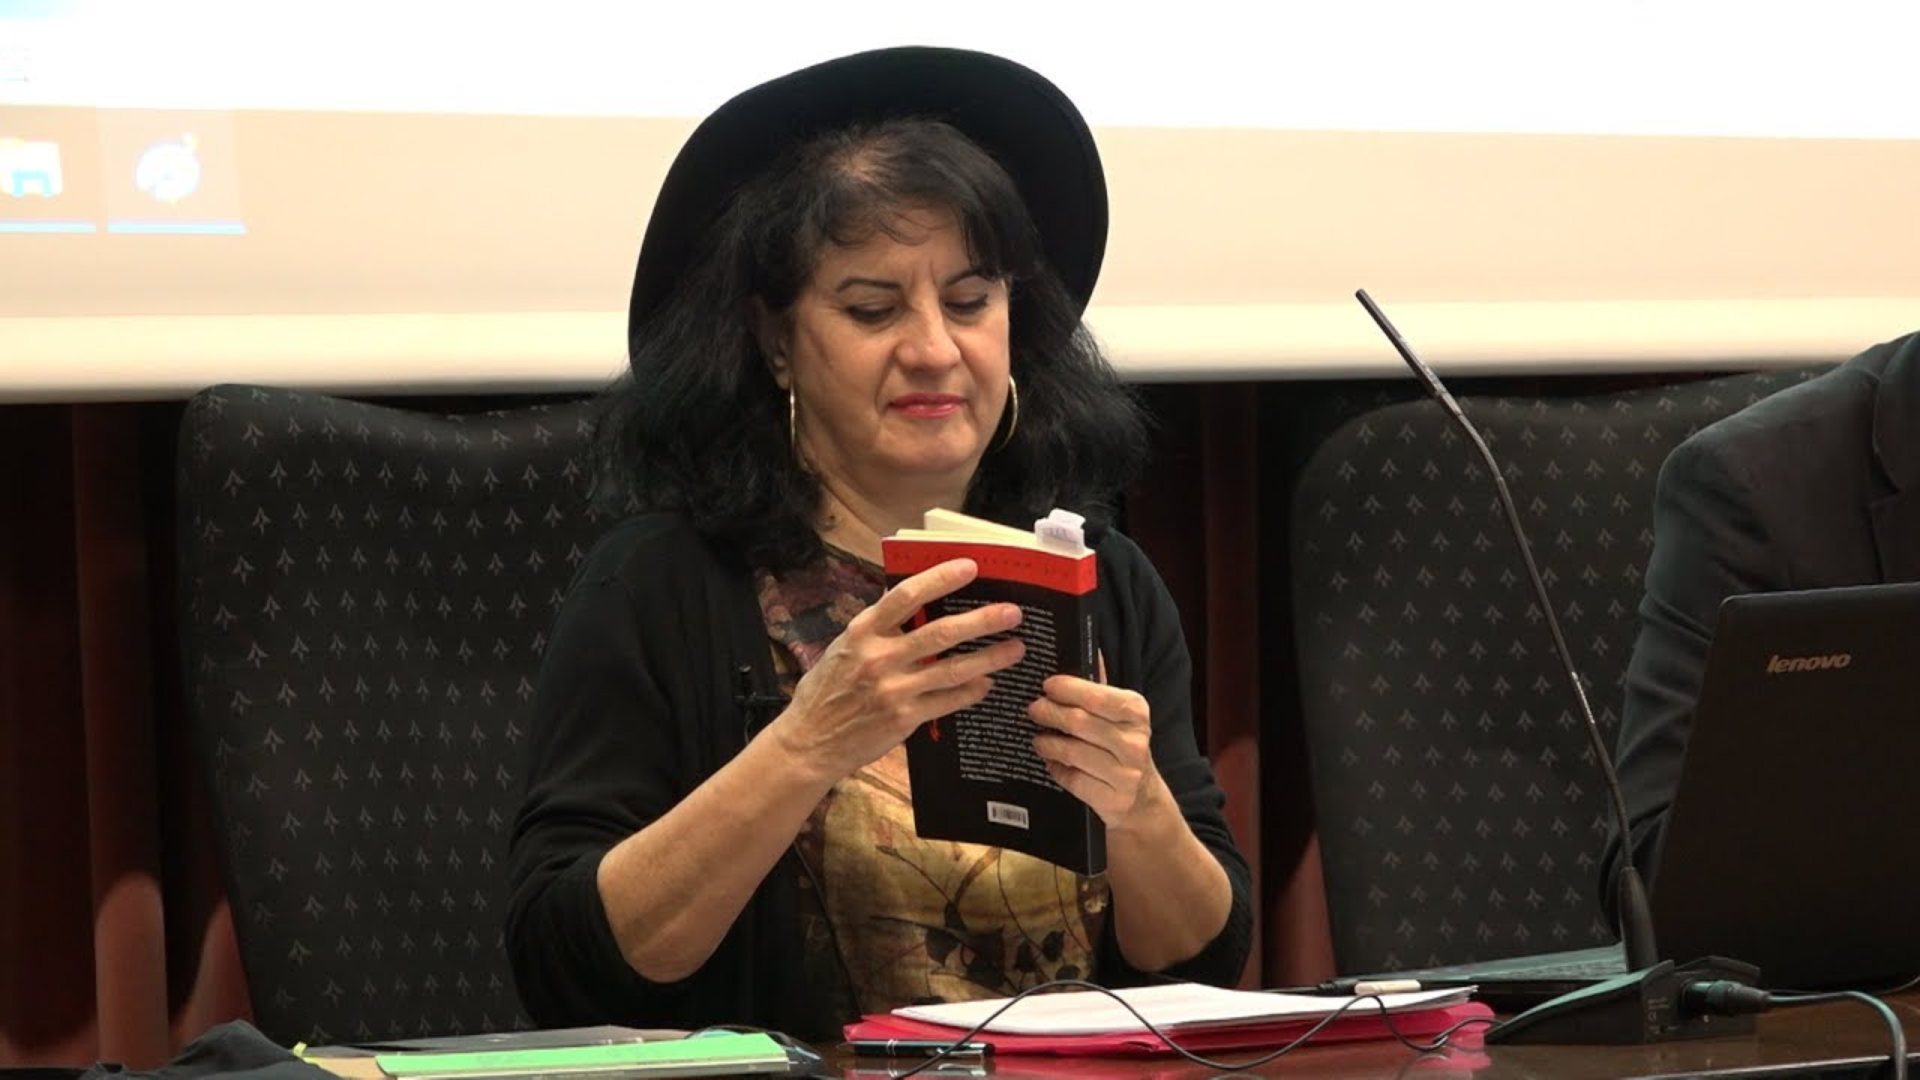 La poesía de Aurora Luque gana el reputado Premio Loewe por 'Gavieras'